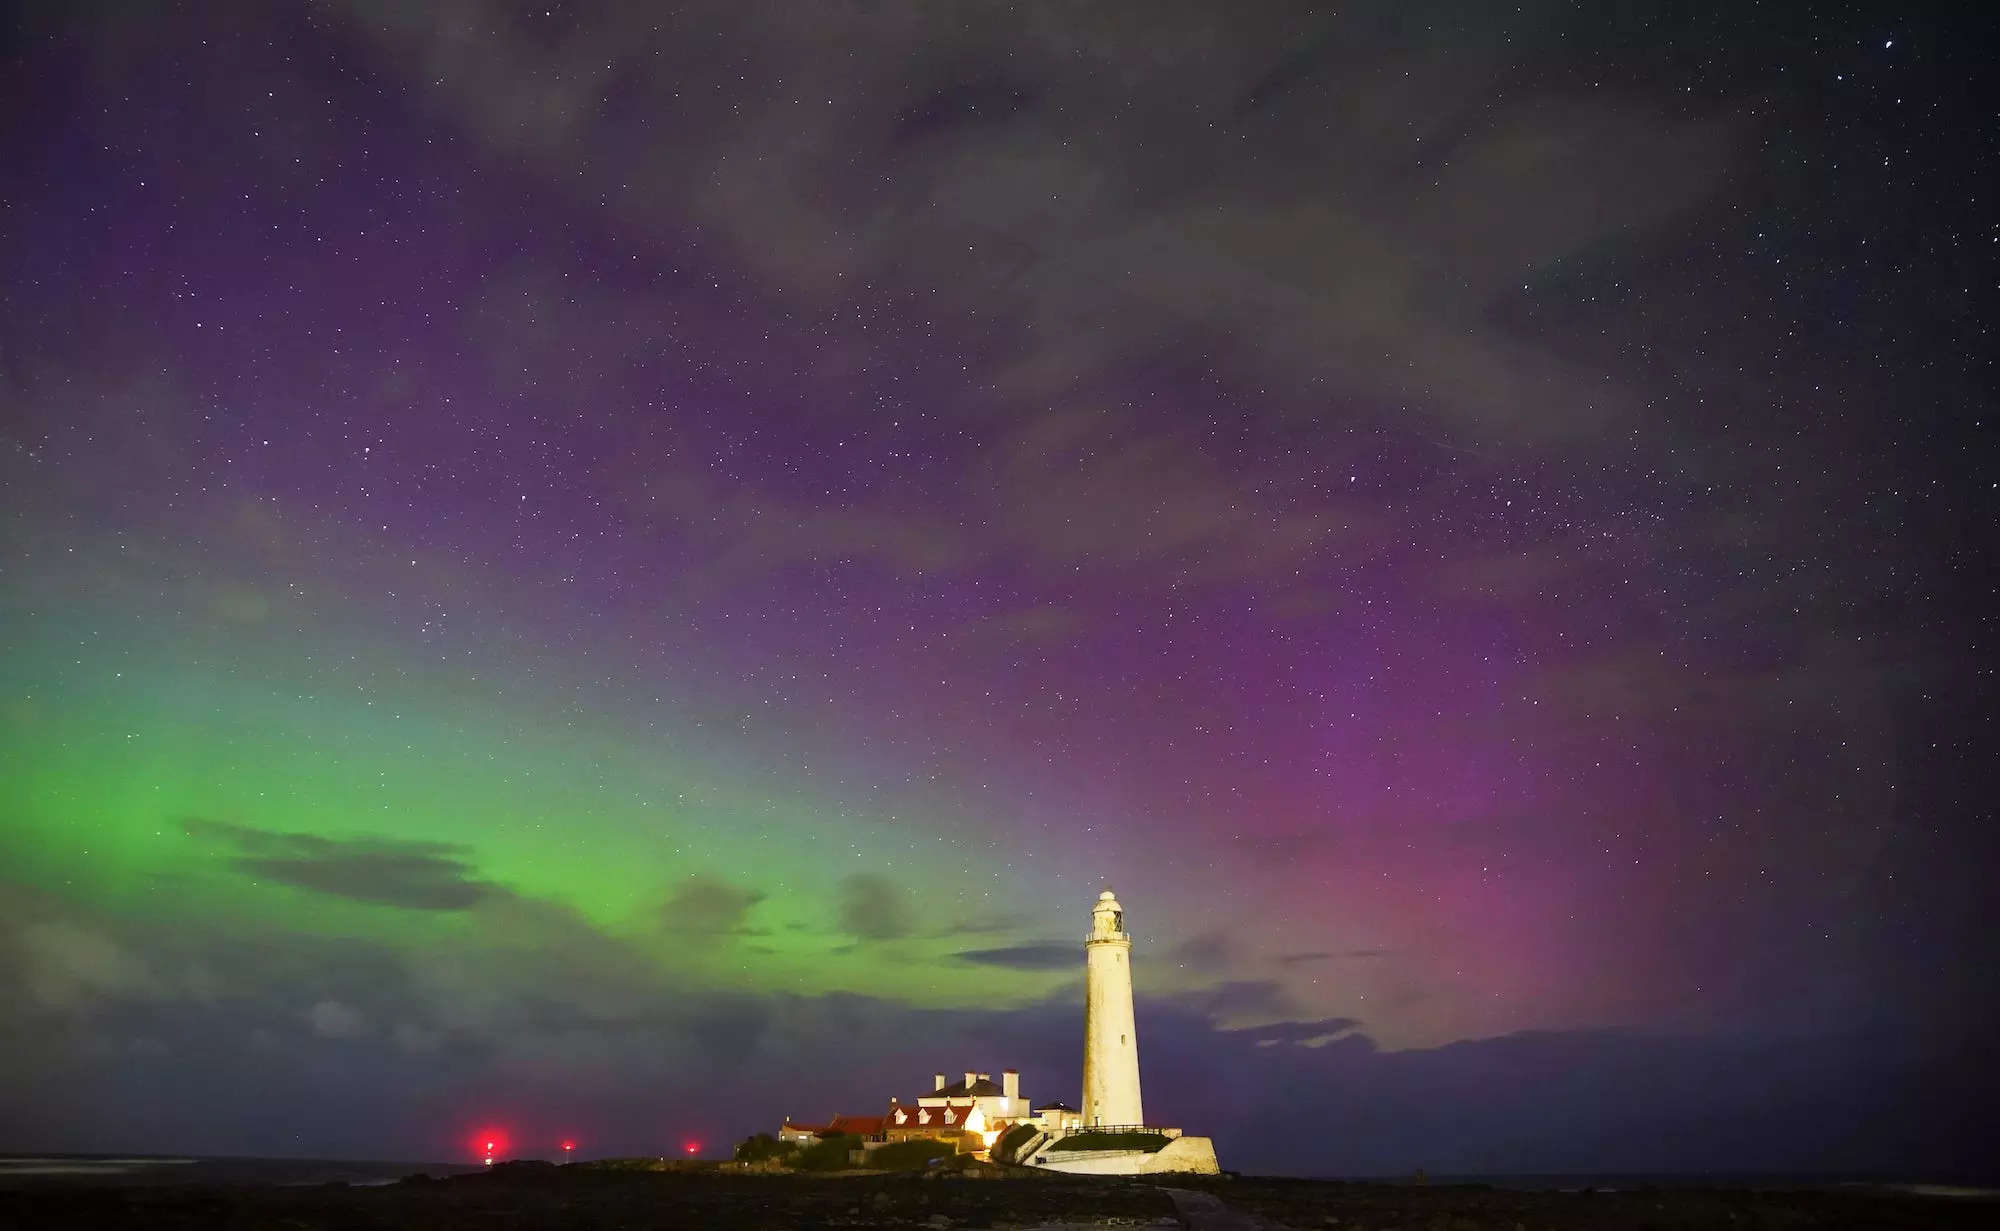 Auroras seen above a lighthouse.